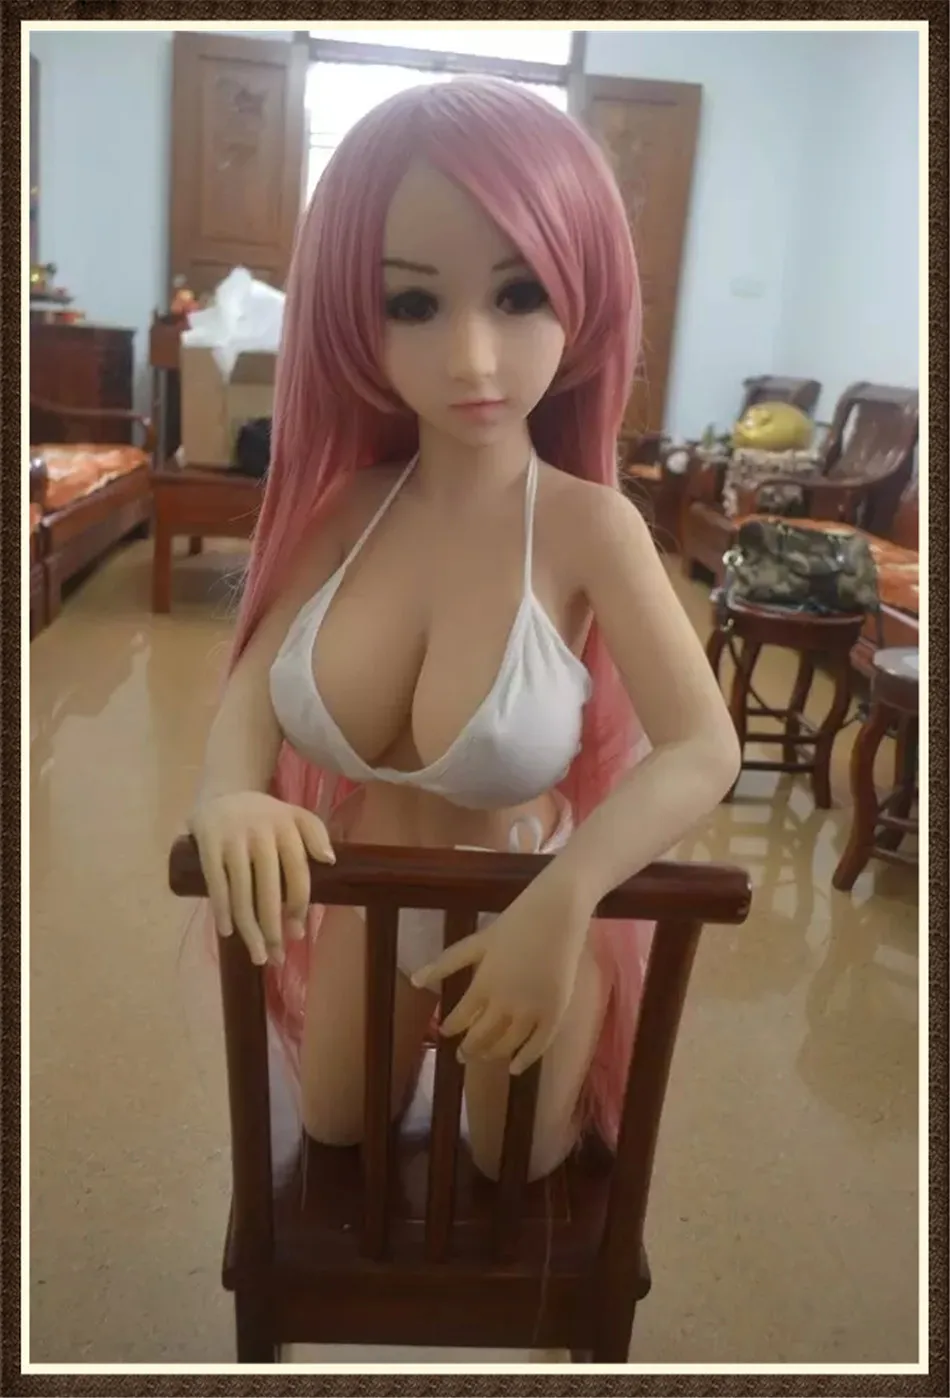 Porn caoutchouc femme réaliste femme poupée de sexe gros seins vagin vrai chatte et le cul japonais silicone amour poupées à vendre drop ship photo image